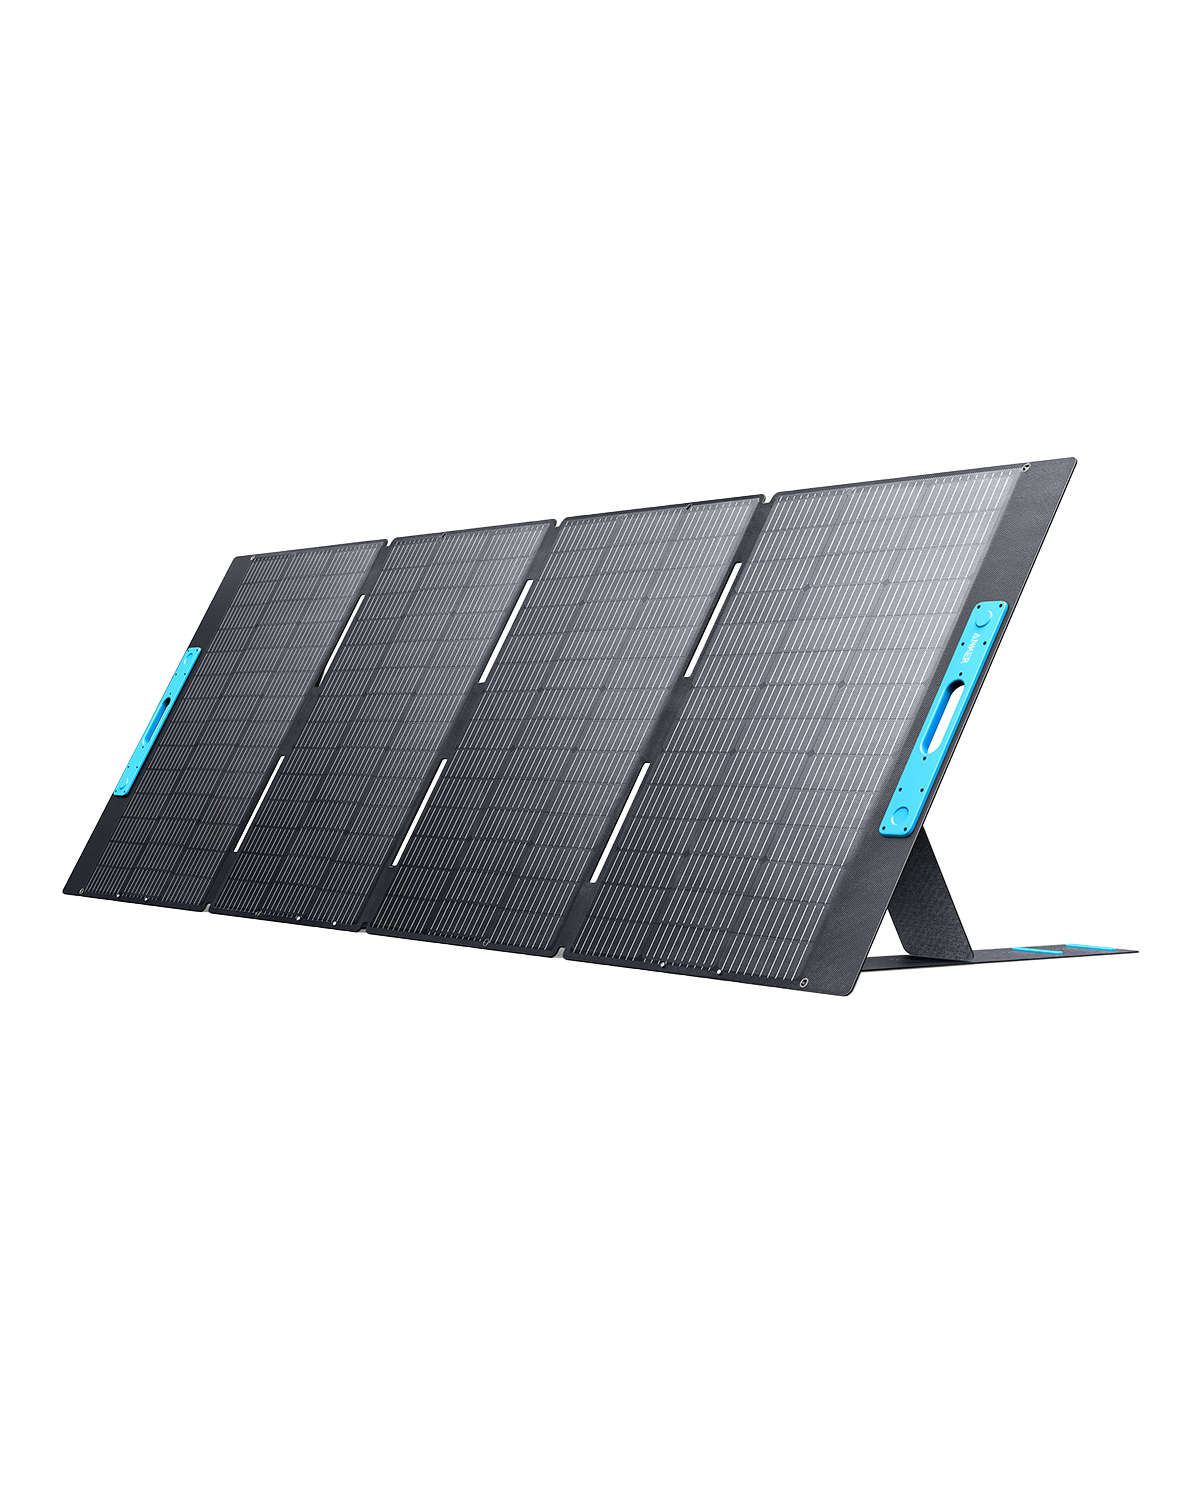 SALE＆送料無料 Anker 625 Solar Panel (100W) 家電・スマホ・カメラ